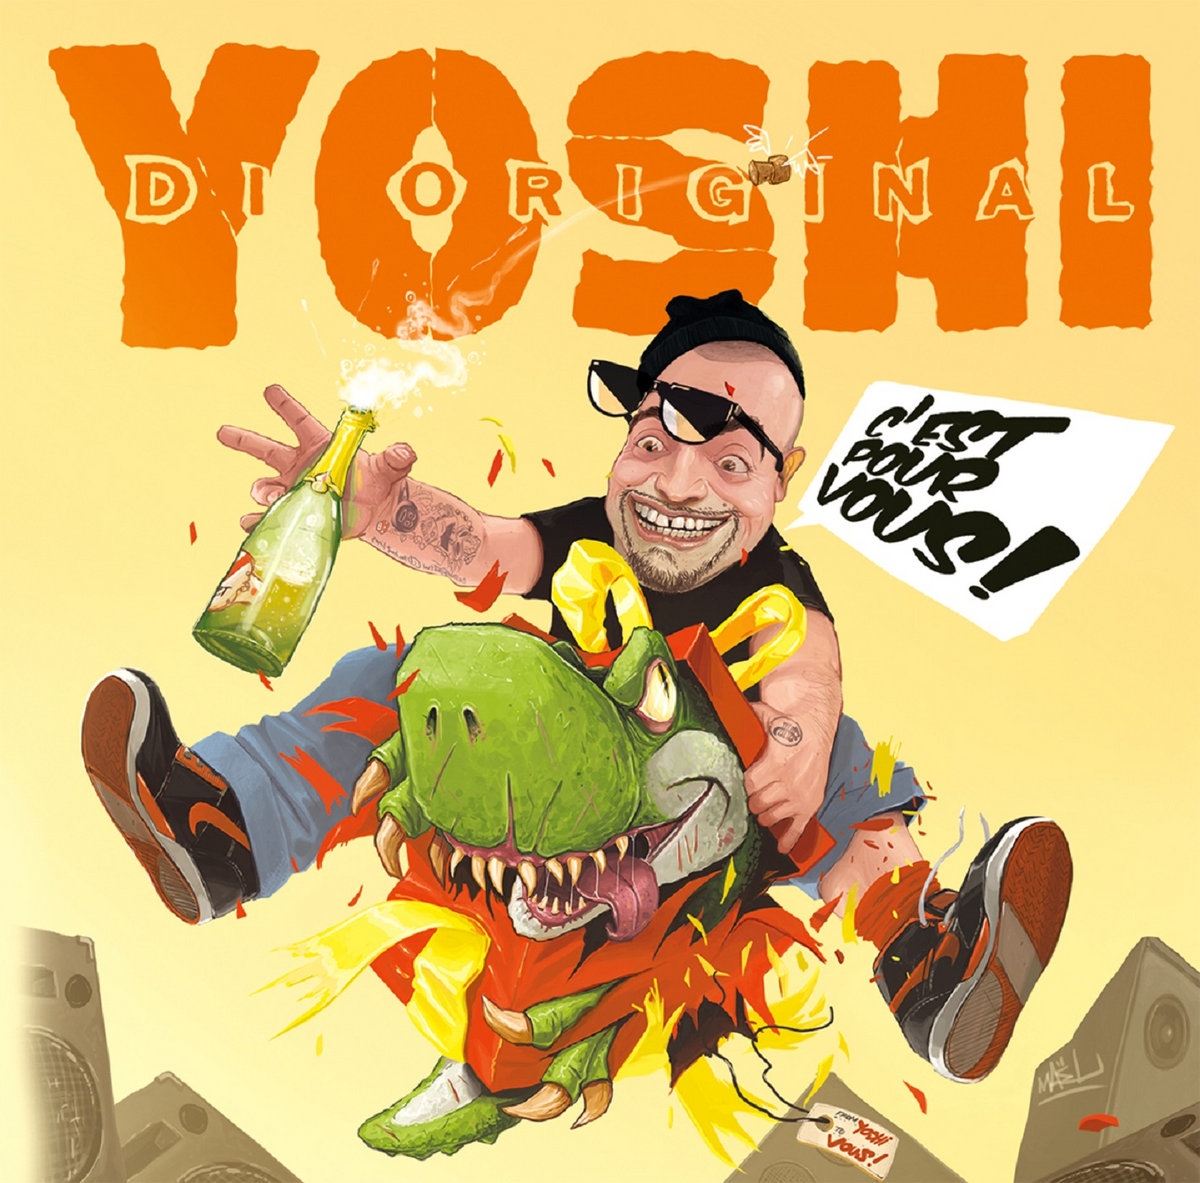 Album Vinyle "Yoshi - C'est pour vous" de yoshi sur Scredboutique.com